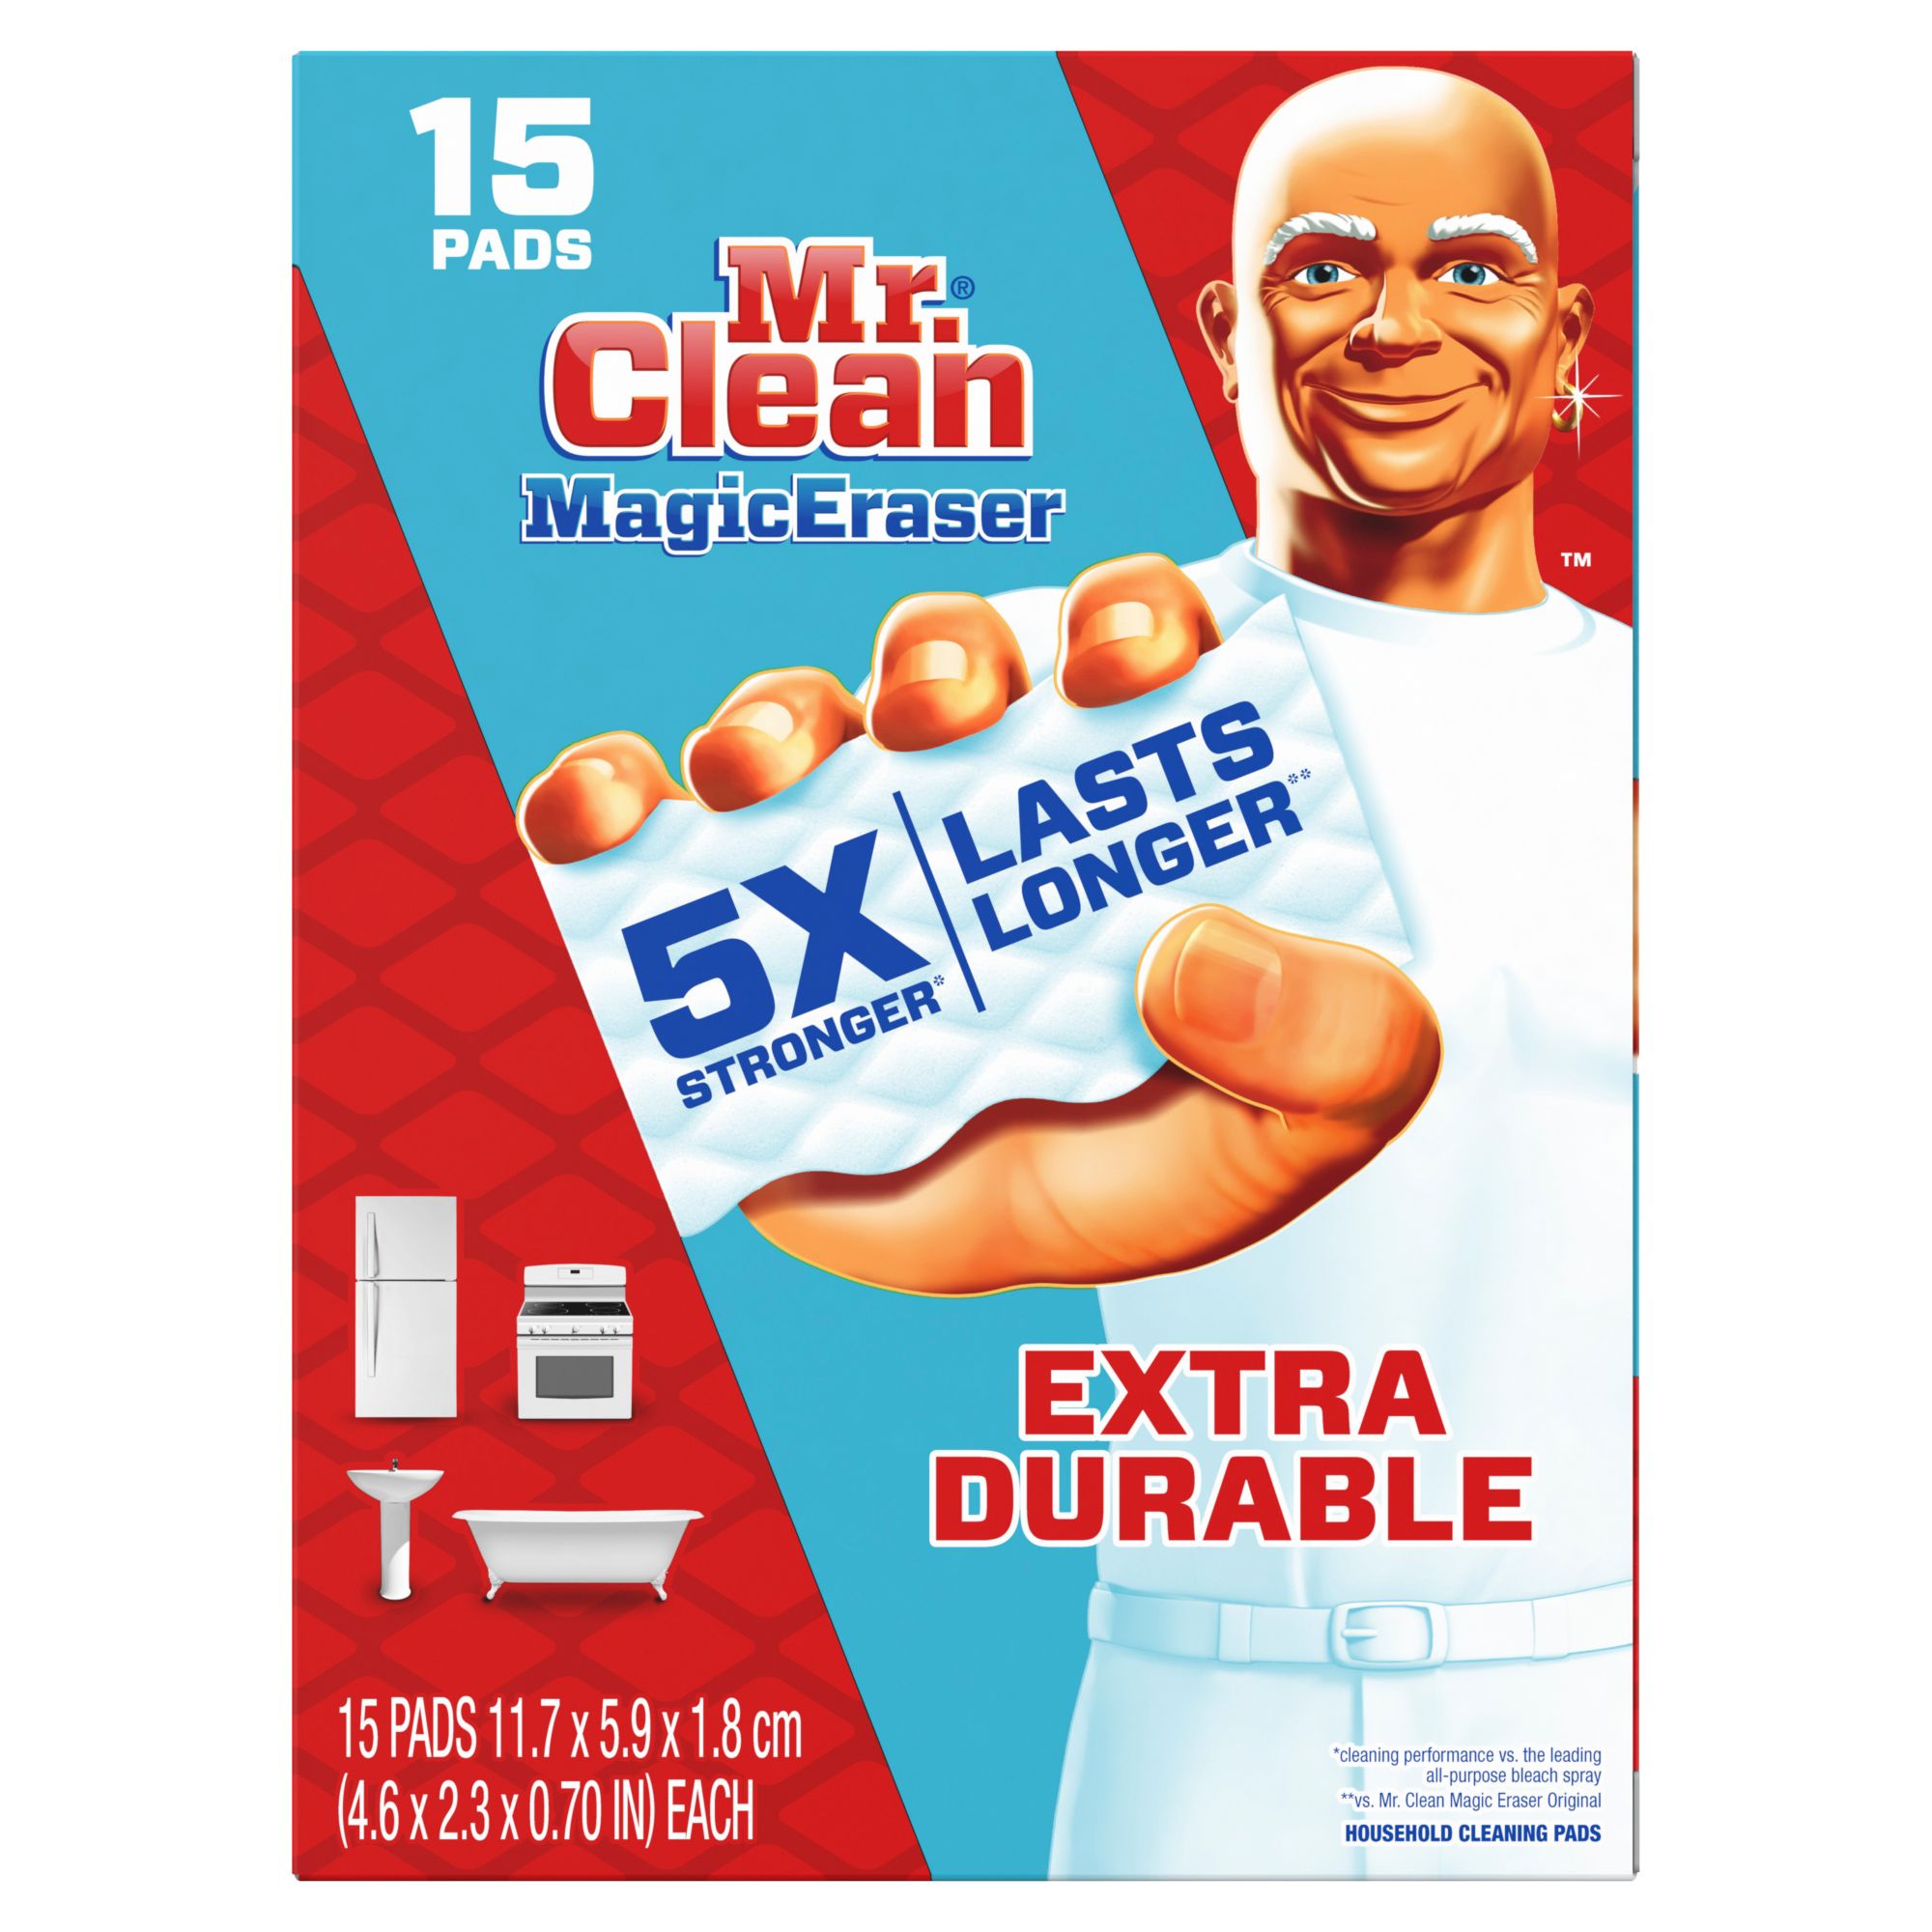 Gạt tẩy vết bẩn mạnh mẽ Mr. Clean Extra Durable Scrub Magic Eraser Sponges với số lượng lớn 15 cái sẽ khiến dọn dẹp nhà cửa trở nên đơn giản và dễ dàng hơn bao giờ hết. Với khả năng tiêu diệt các vết bẩn một cách dễ dàng mà không gây hại cho các bề mặt, sản phẩm này chắc chắn sẽ là đồng minh đáng tin cậy của bạn trong việc giữ nhà sạch sẽ.